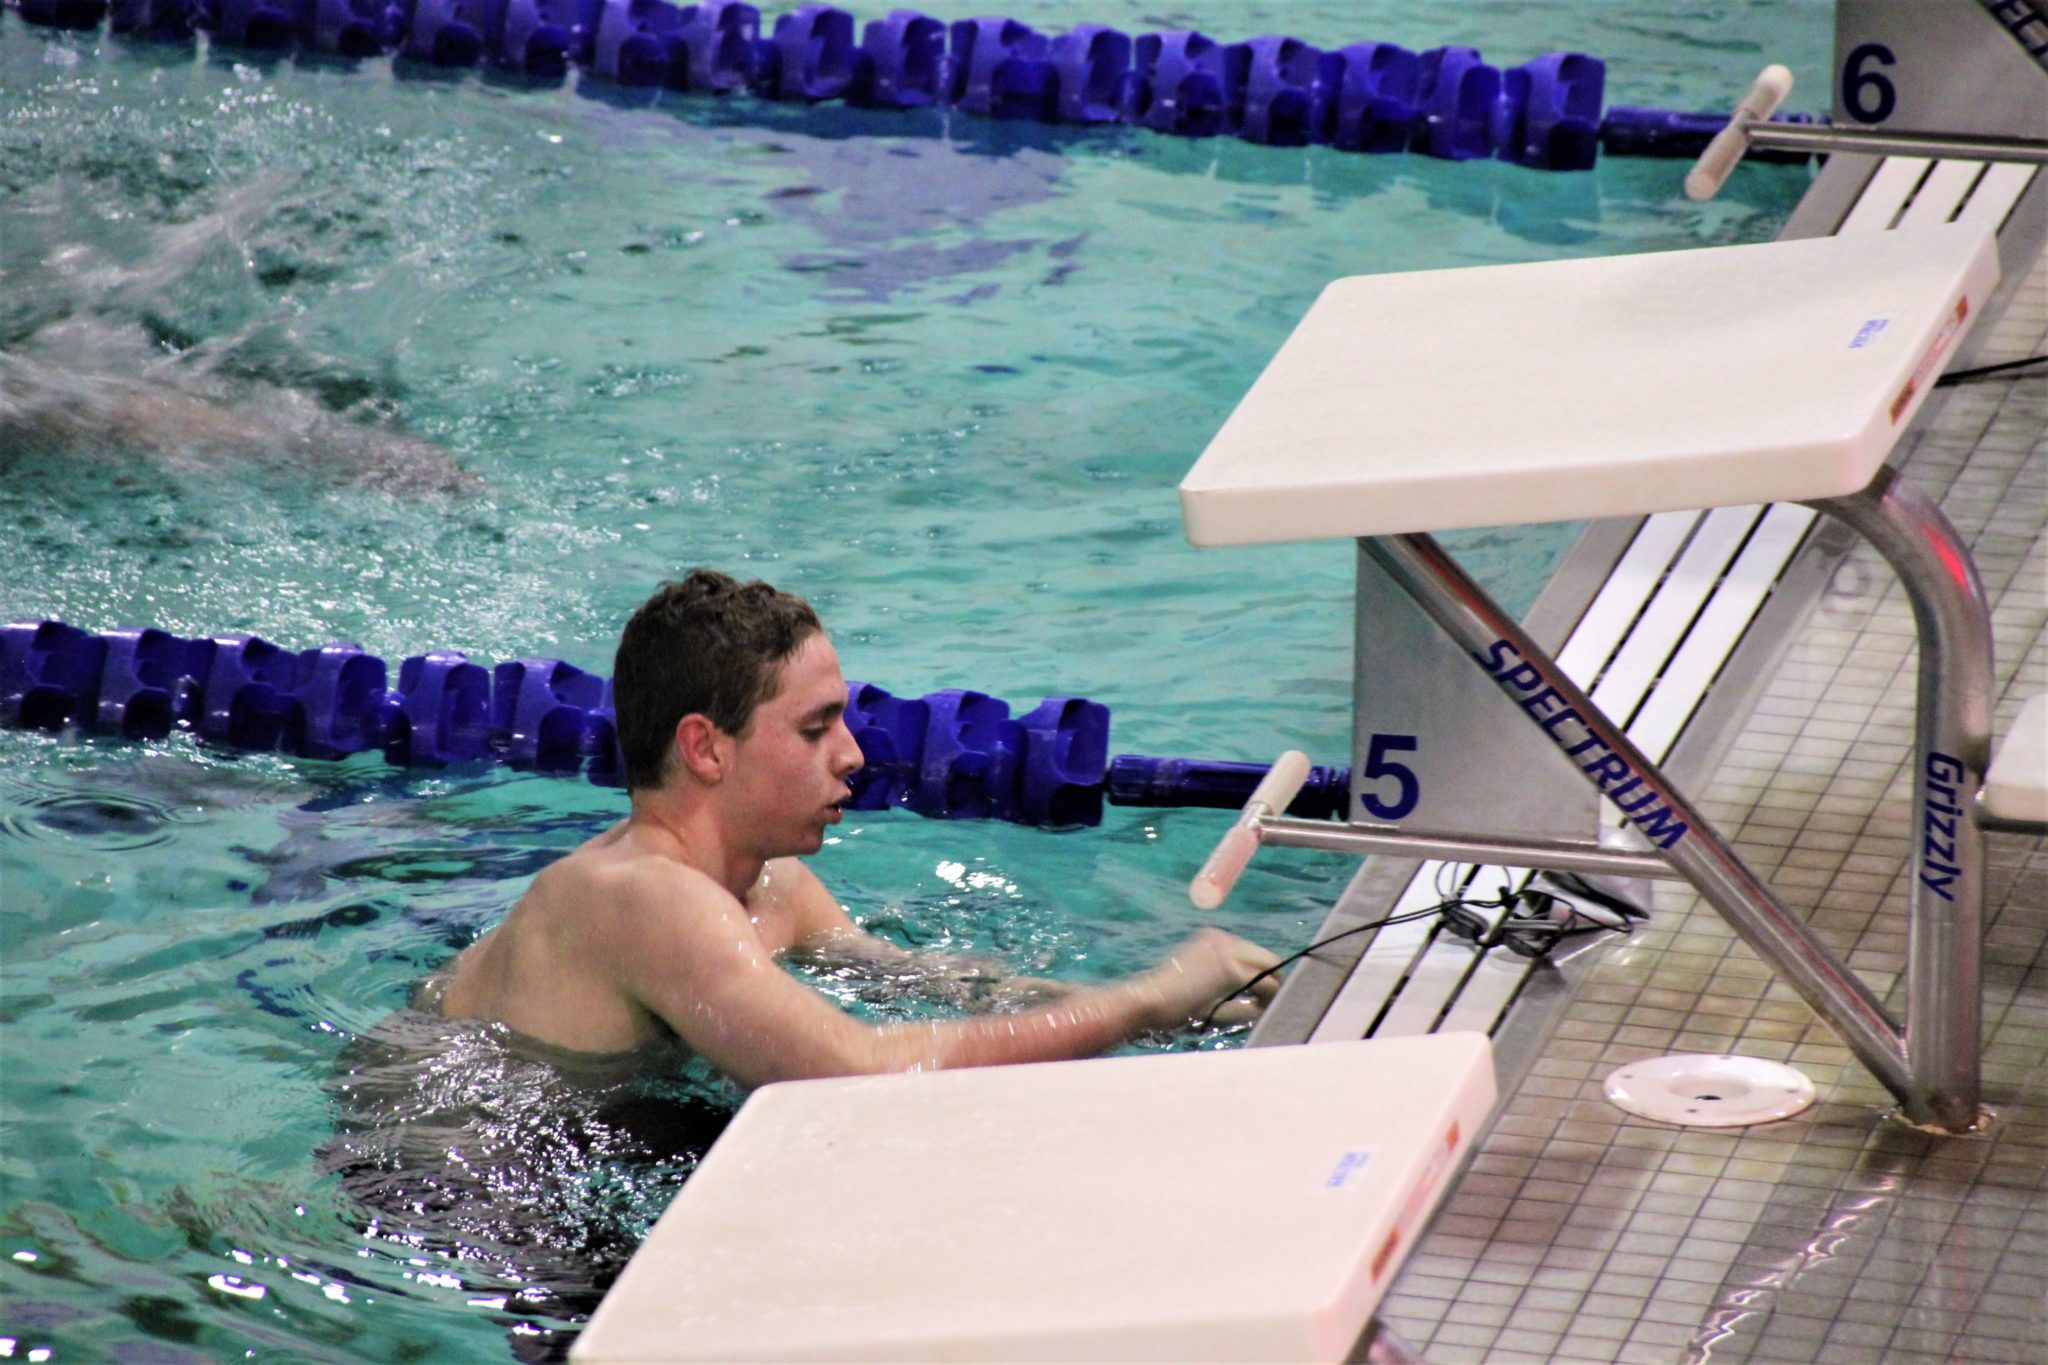 Prep swimmer bound for Harvard Olympics